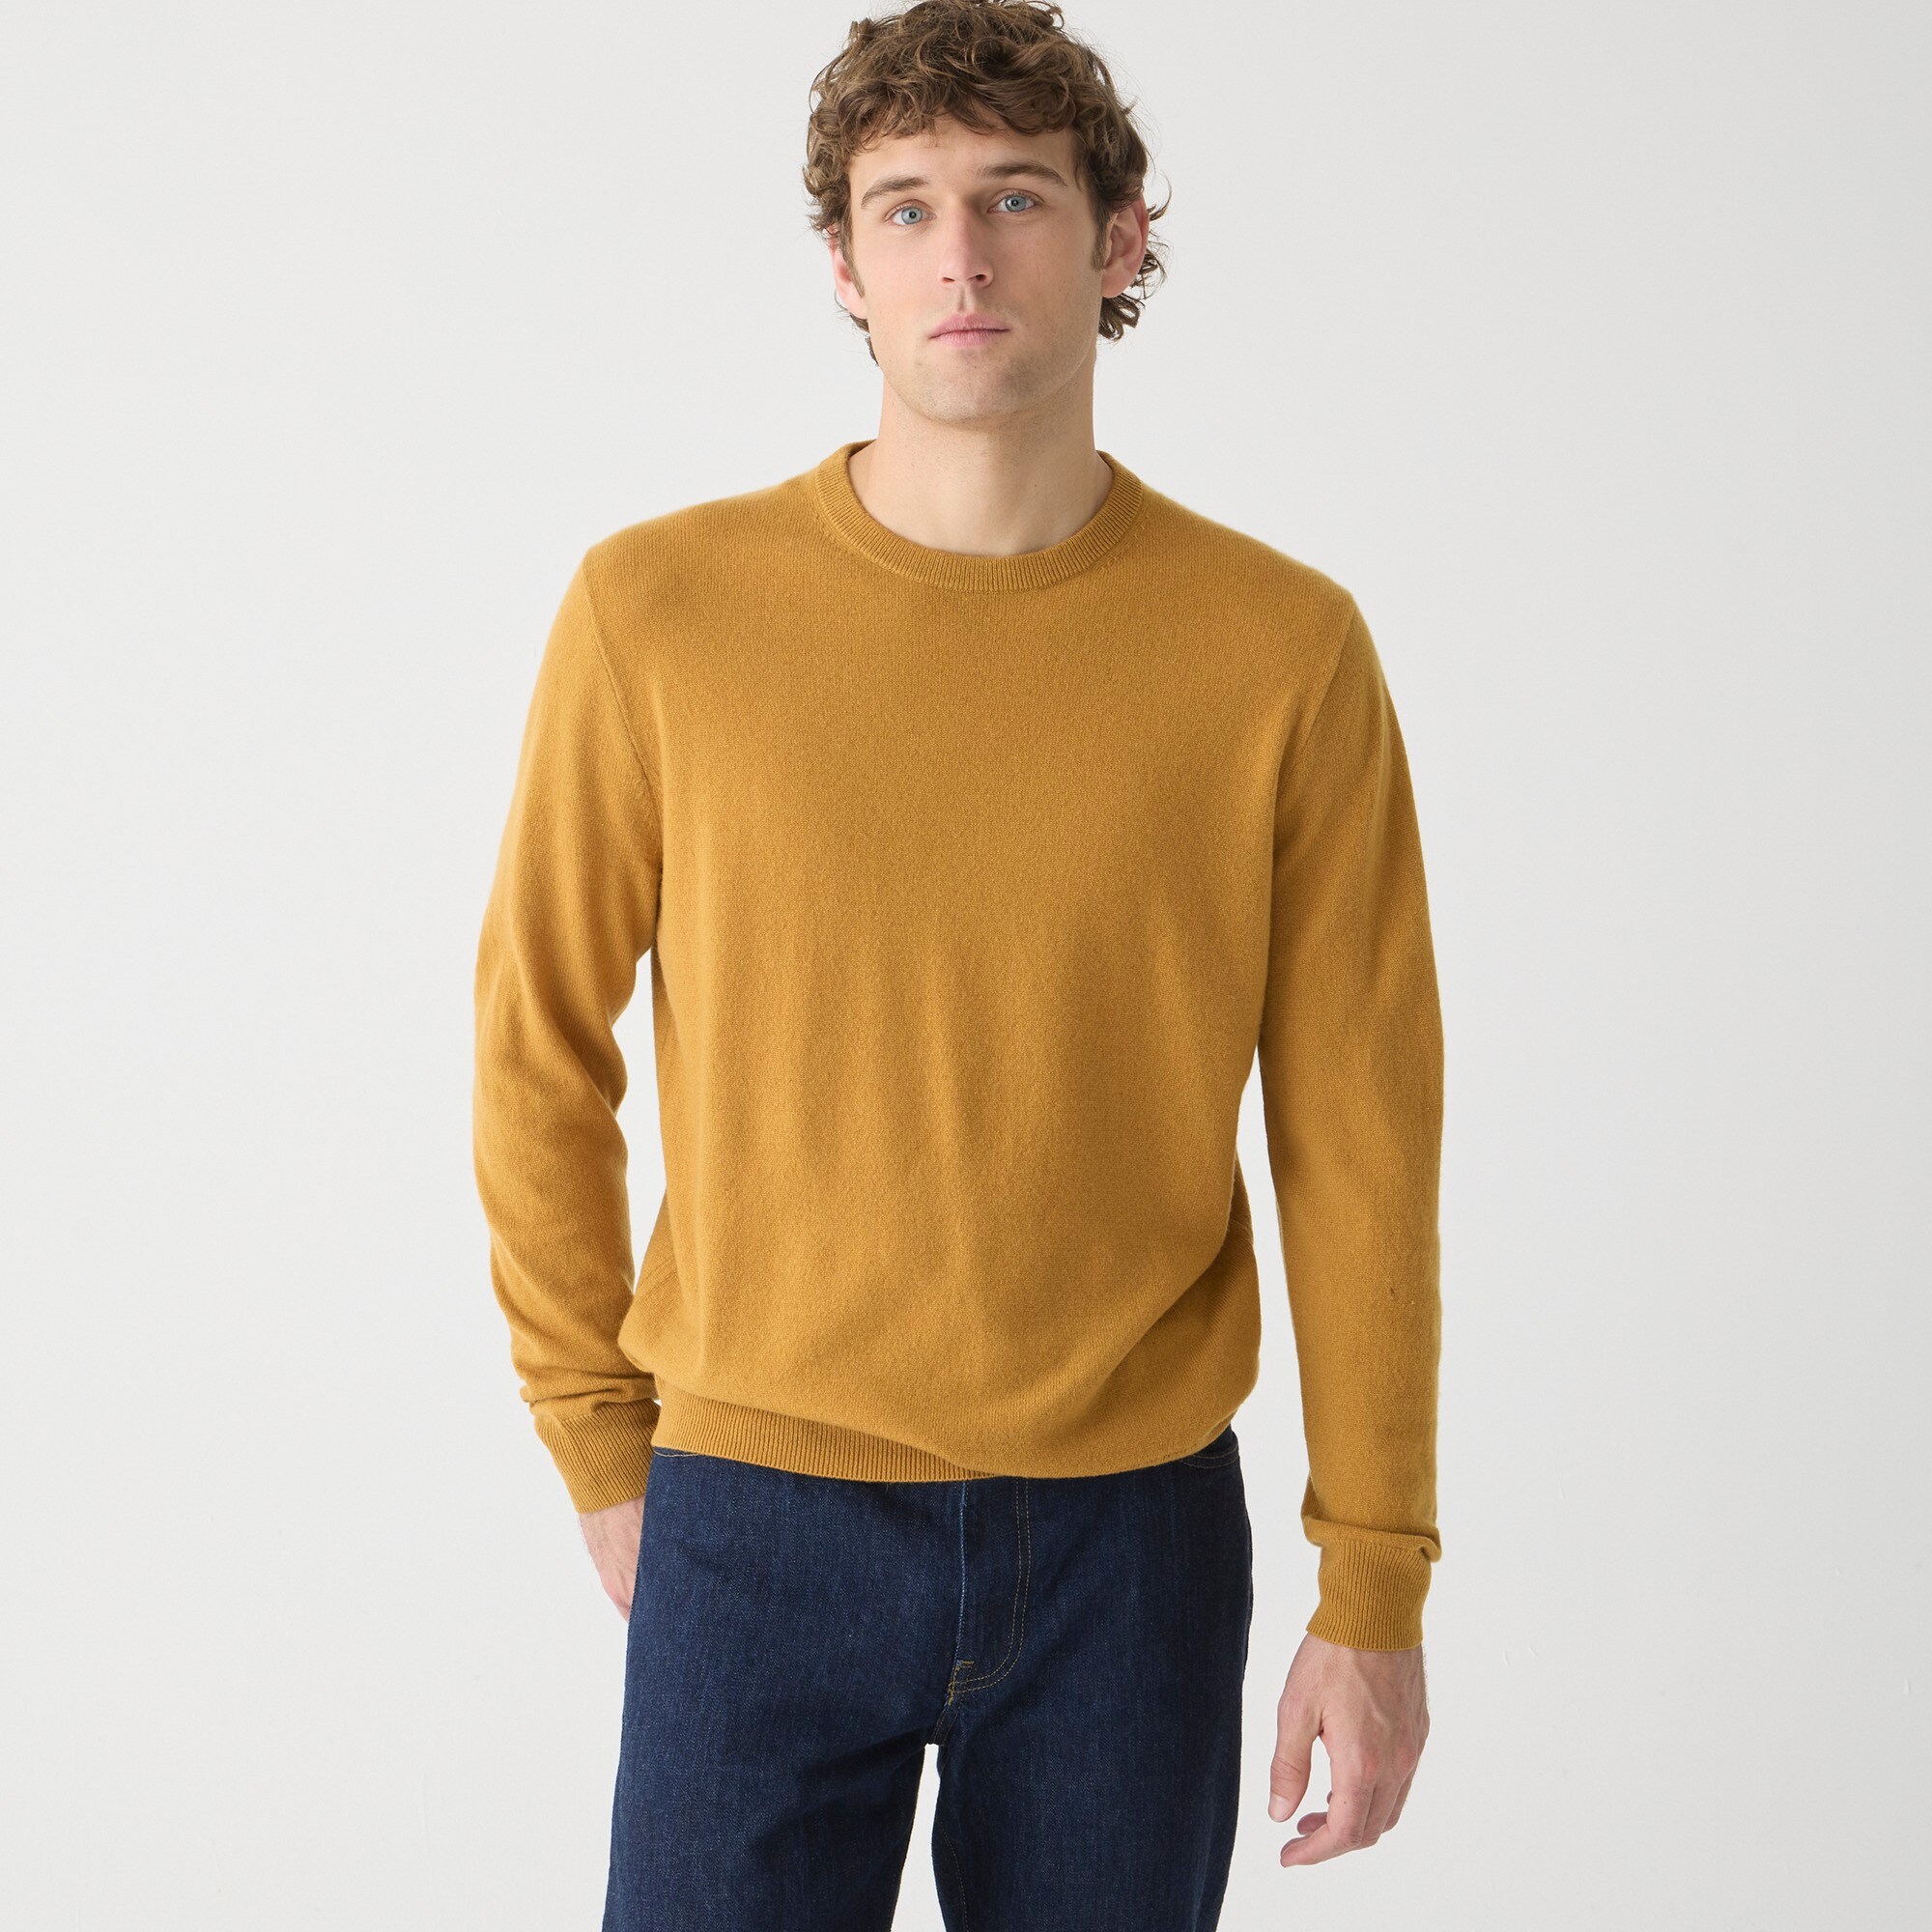  Cashmere crewneck sweater